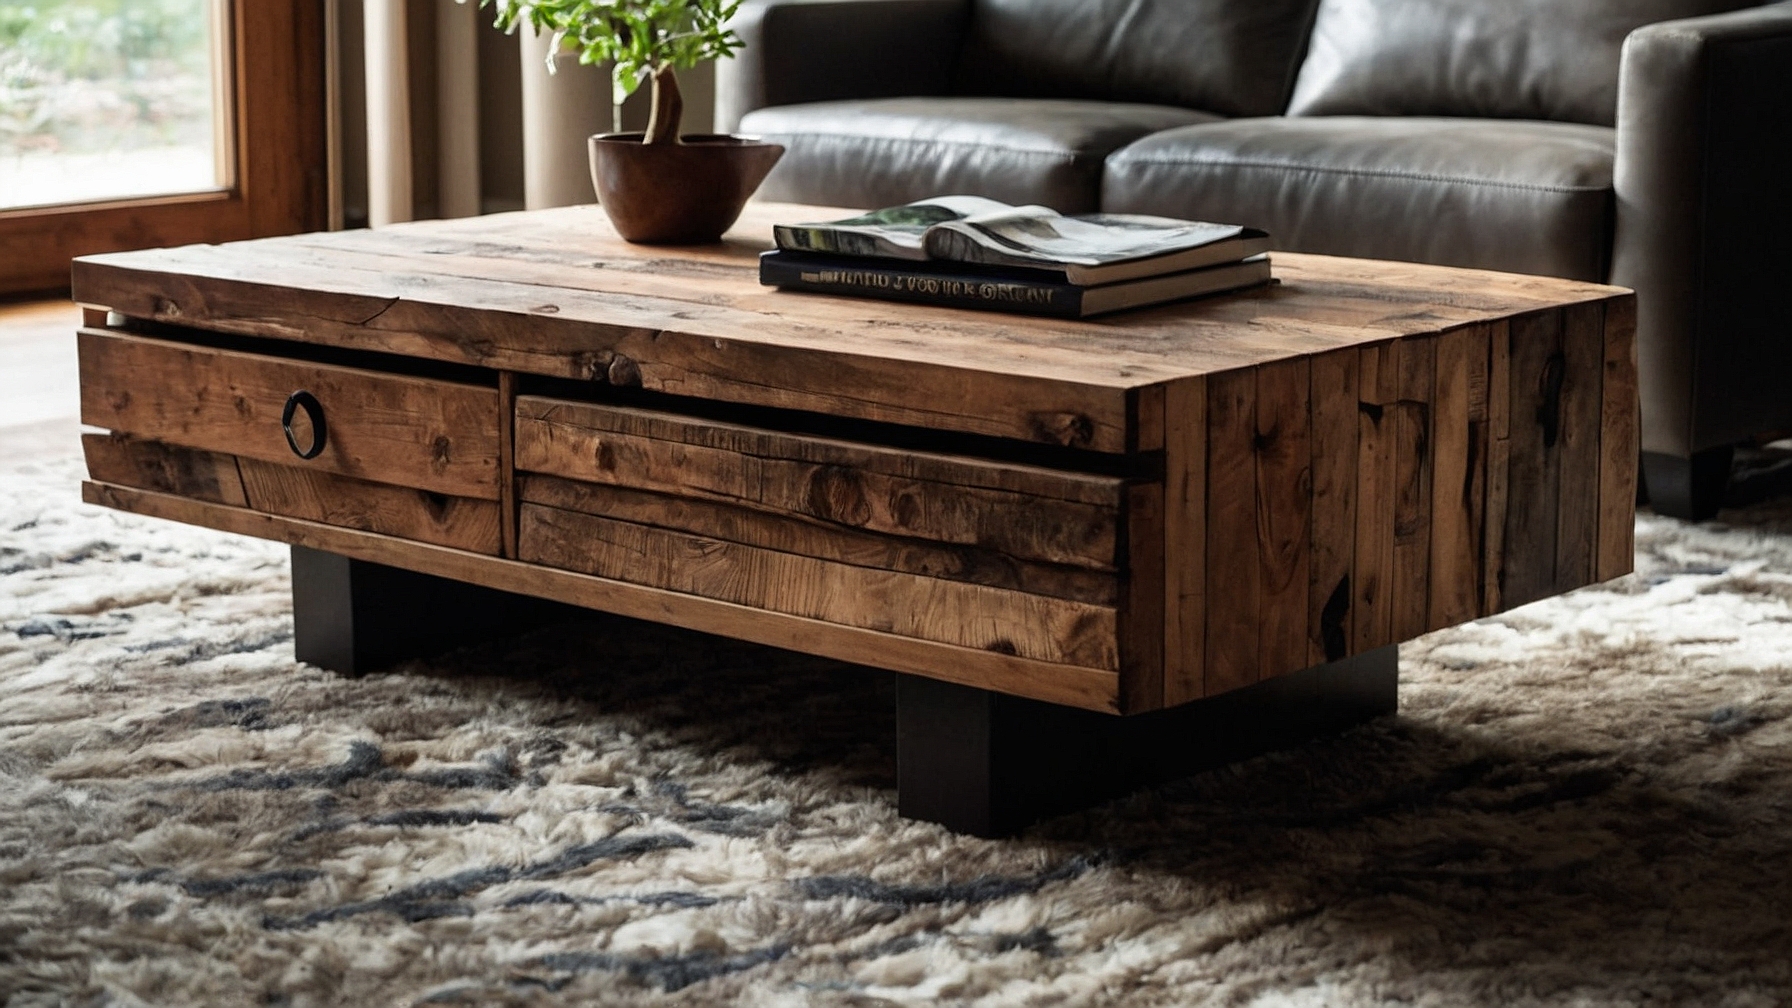 Default Minimalist house Wood Coffee Table Modern Style Timel 3 2